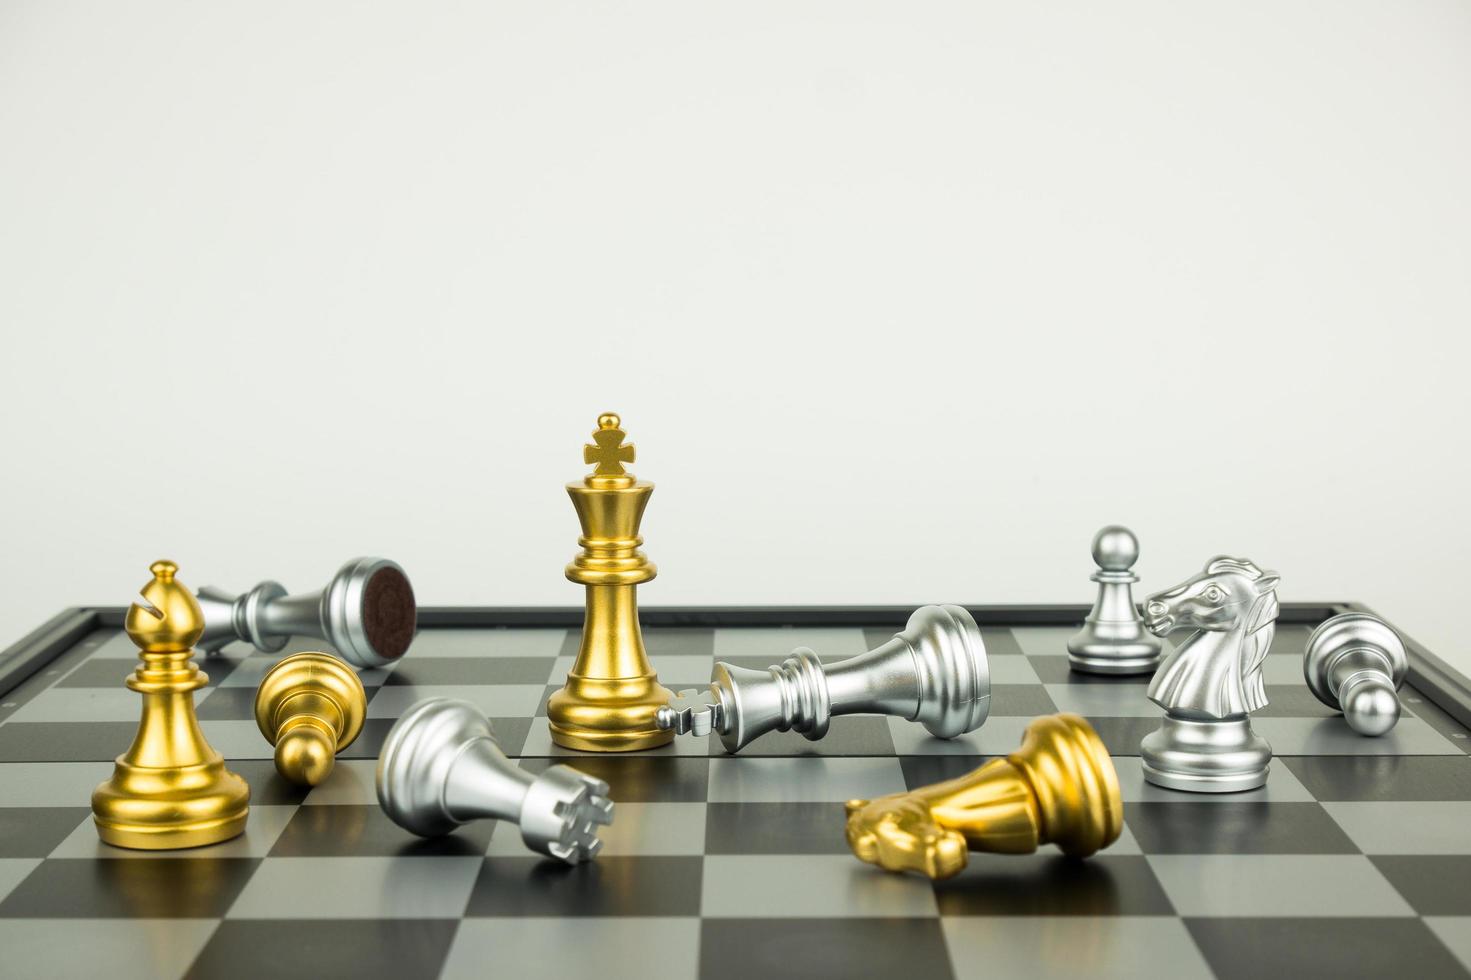 schaakspel figuren - strategie en leiderschapsconcept foto